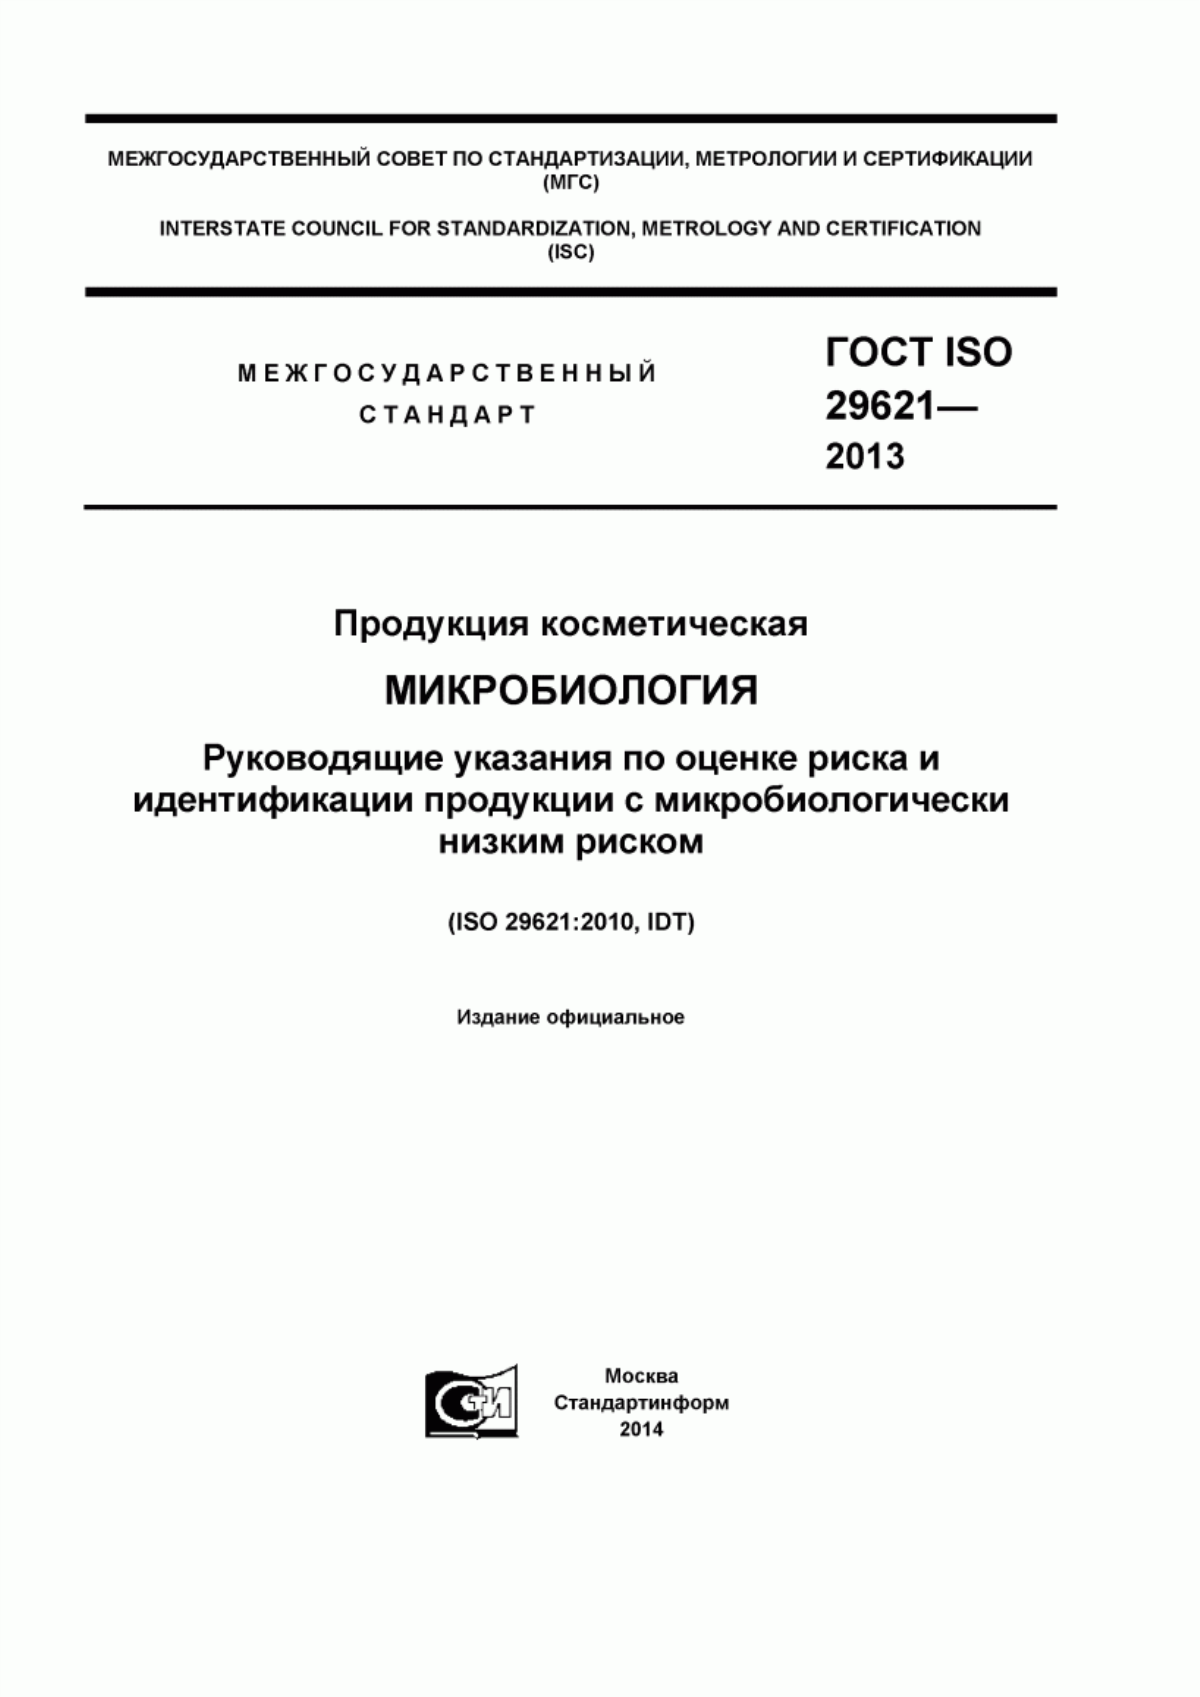 ГОСТ ISO 29621-2013 Продукция косметическая. Микробиология. Руководящие указания по оценке риска и идентификации продукции с микробиологически низким риском